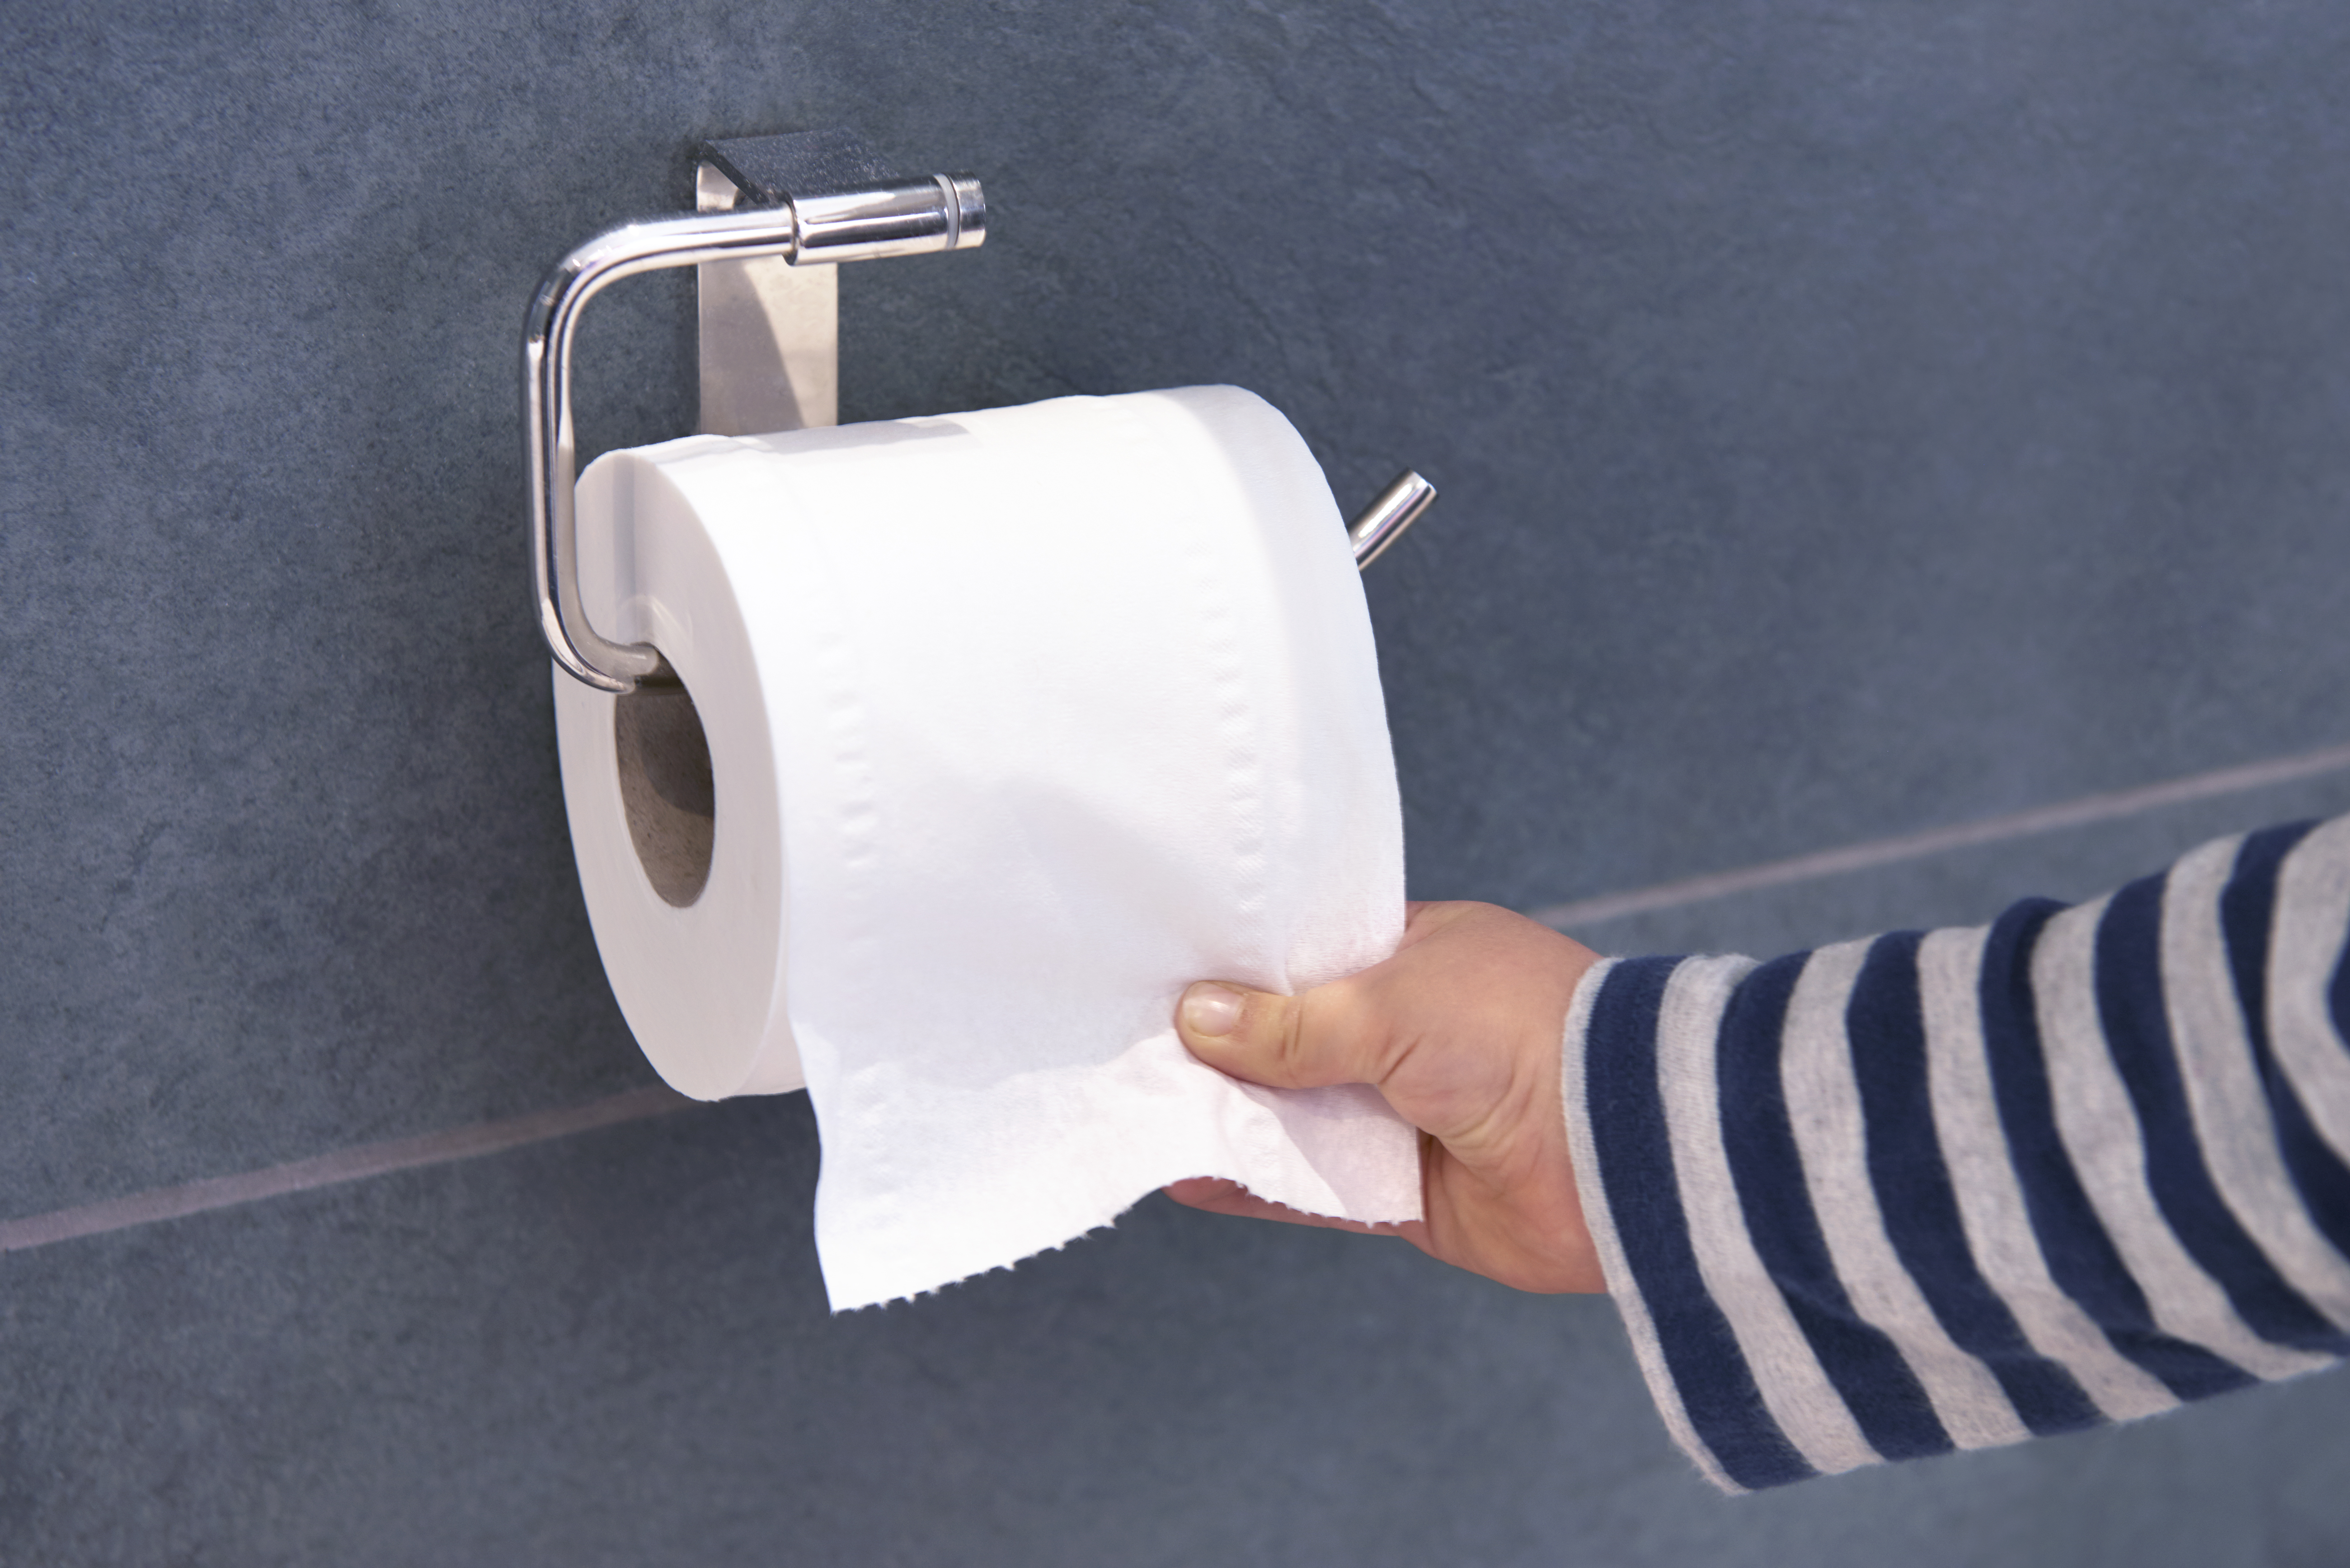 Cela signifie que chaque fois que quelqu'un utilise le papier toilette, l'odeur s'en échappe.